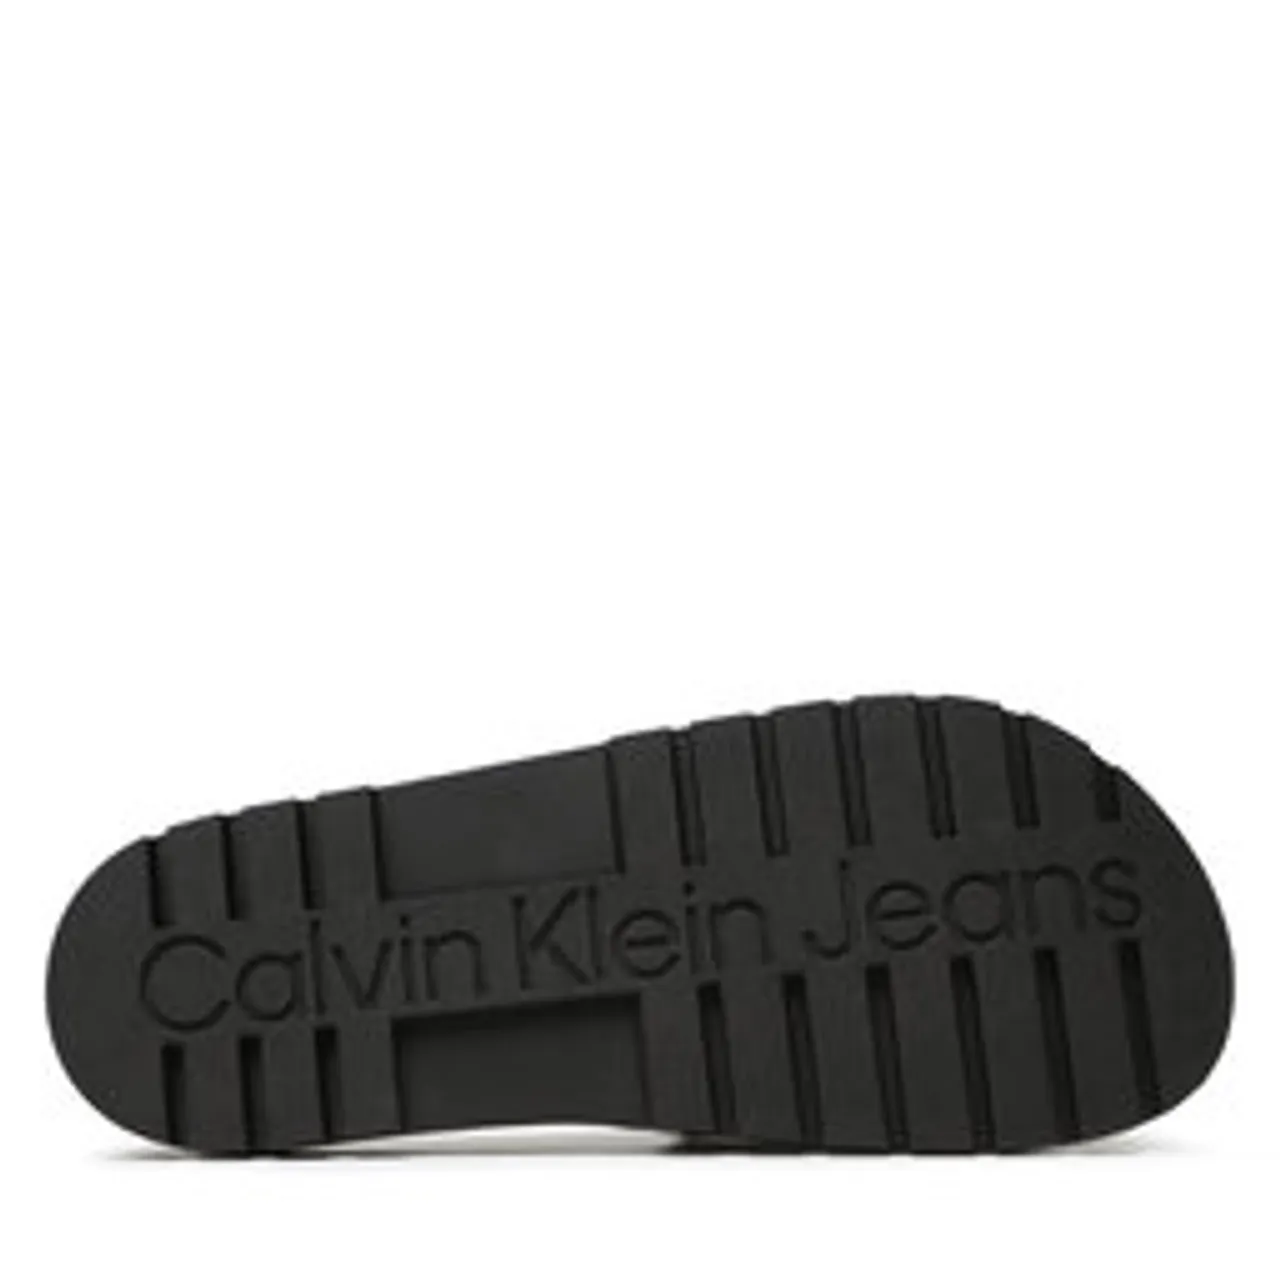 Pantoletten Calvin Klein Jeans Truck Slide Monogram Rubber YM0YM00591 Black/Safety Yellow 0LR